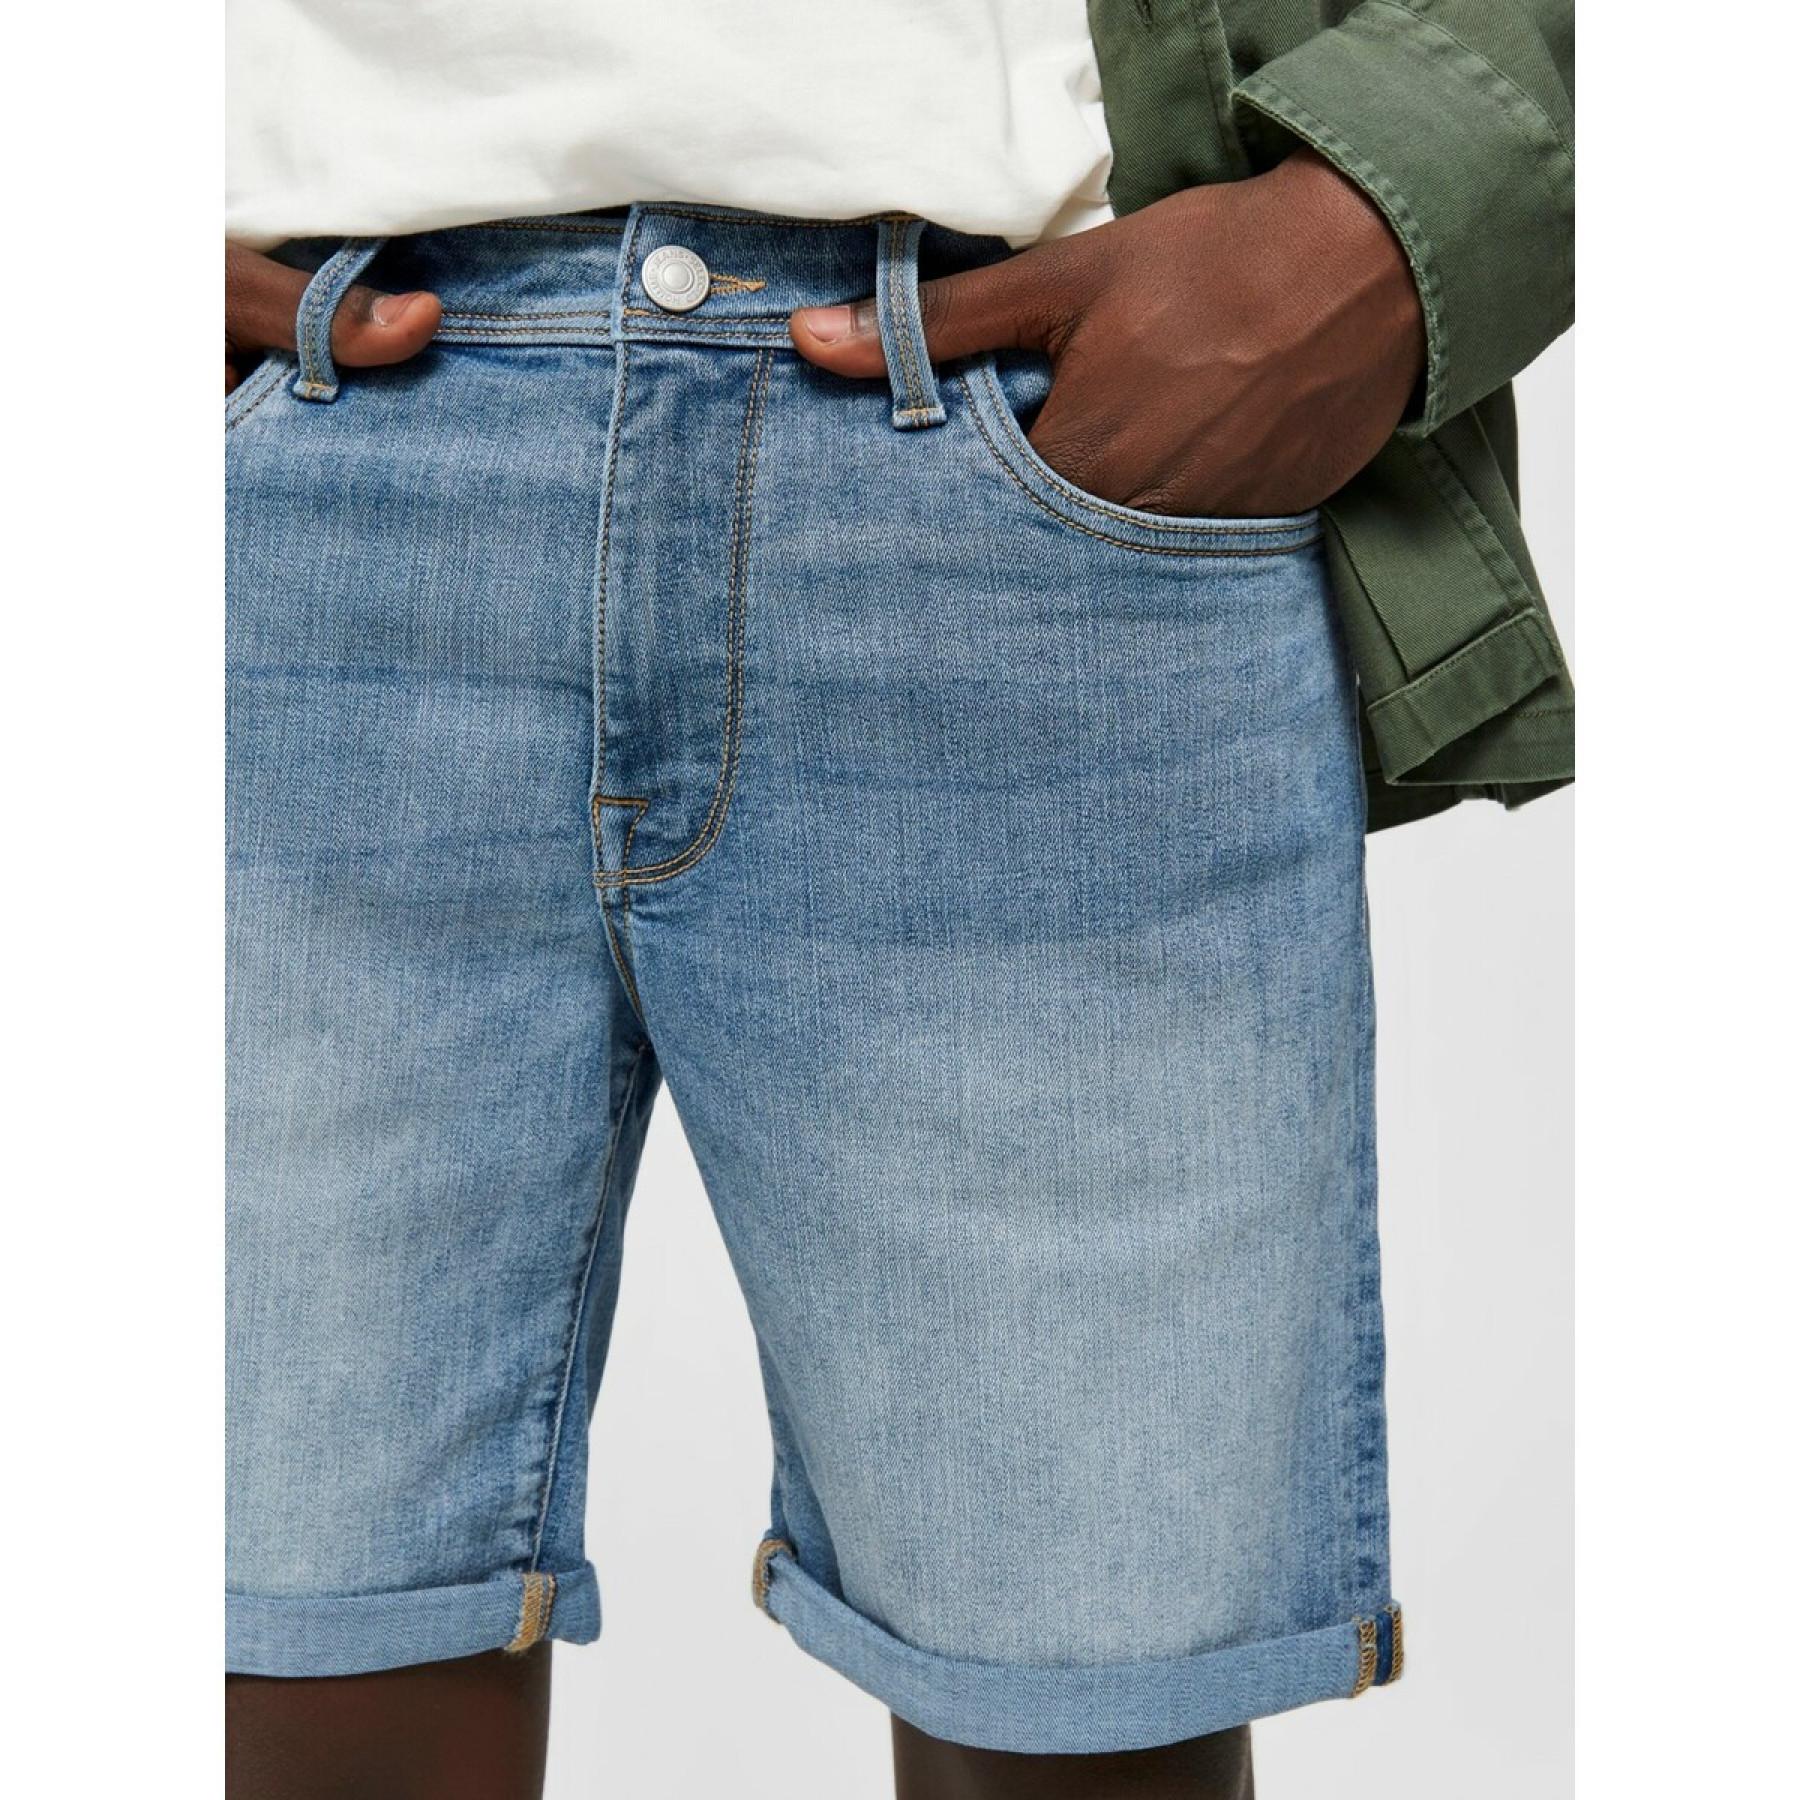 Denim shorts Selected Alex 330